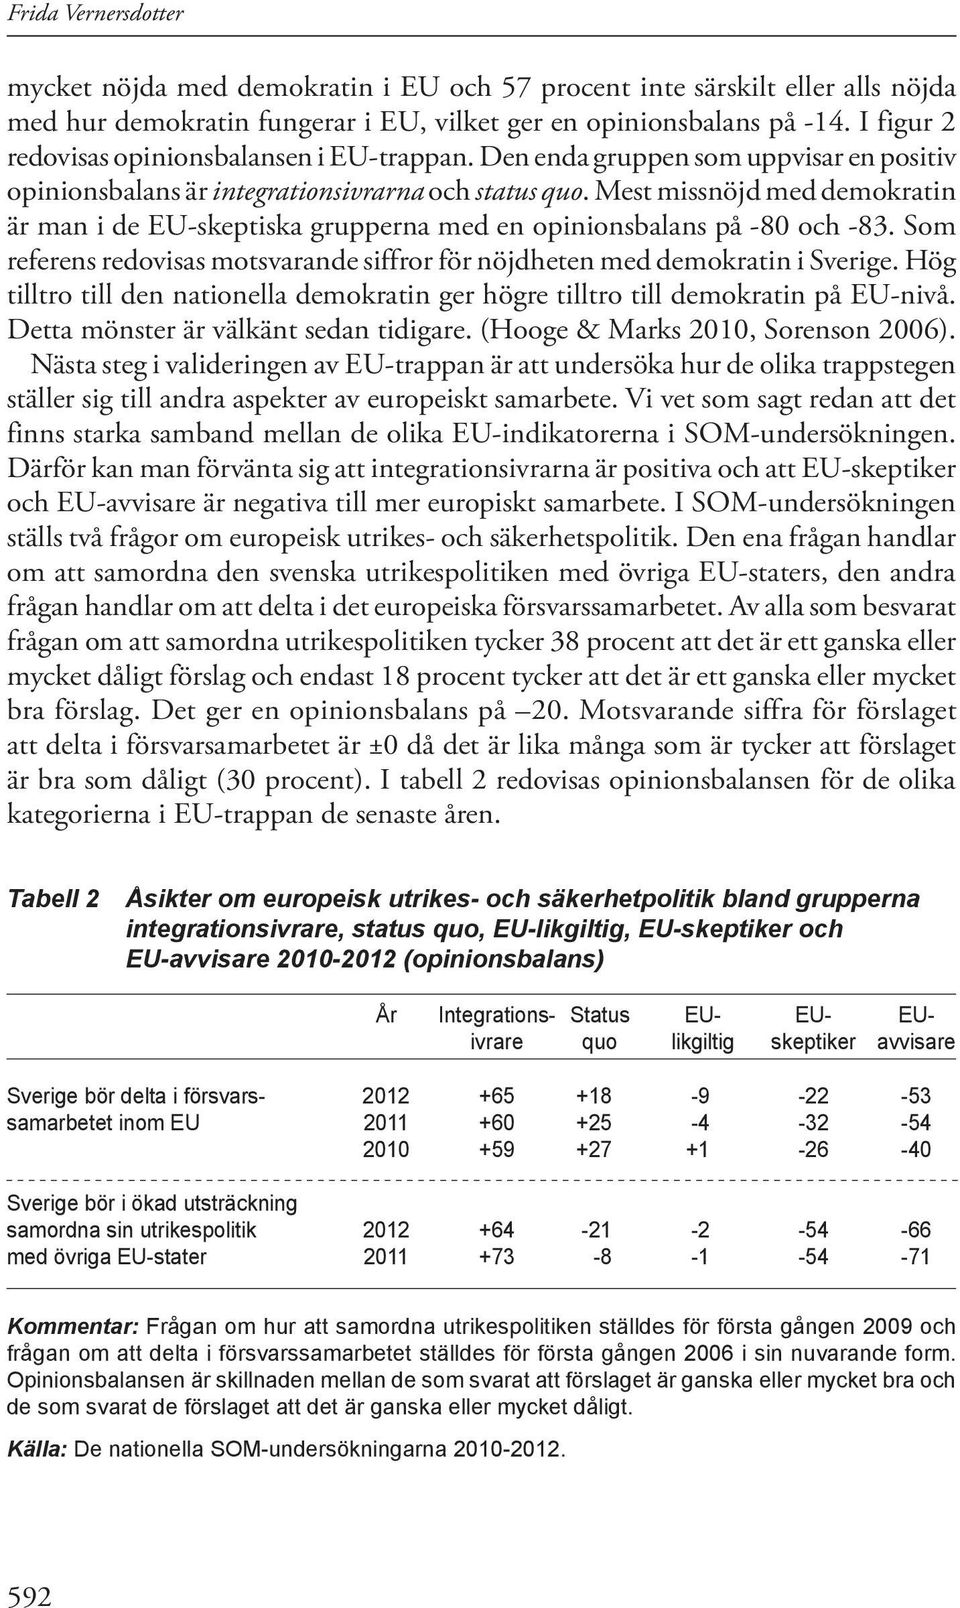 Mest missnöjd med demokratin är man i de EU-skeptiska grupperna med en opinionsbalans på -80 och -83. Som referens redovisas motsvarande siffror för nöjdheten med demokratin i Sverige.